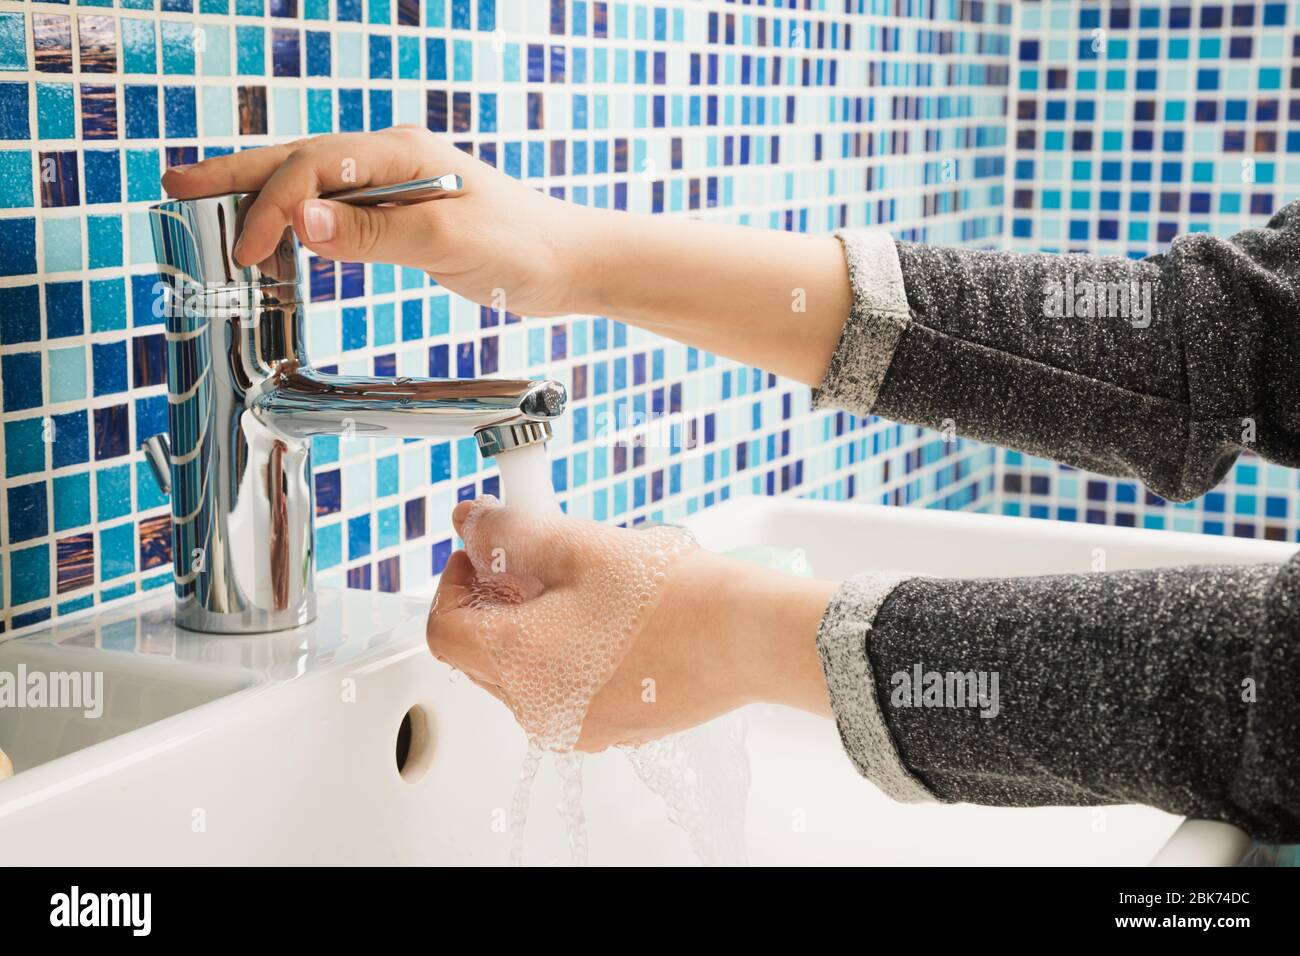 Il bambino apre il rubinetto dell'acqua per lavare le mani, effettuando le misure protettive di base contro la diffusione del virus COVID-19 Foto Stock